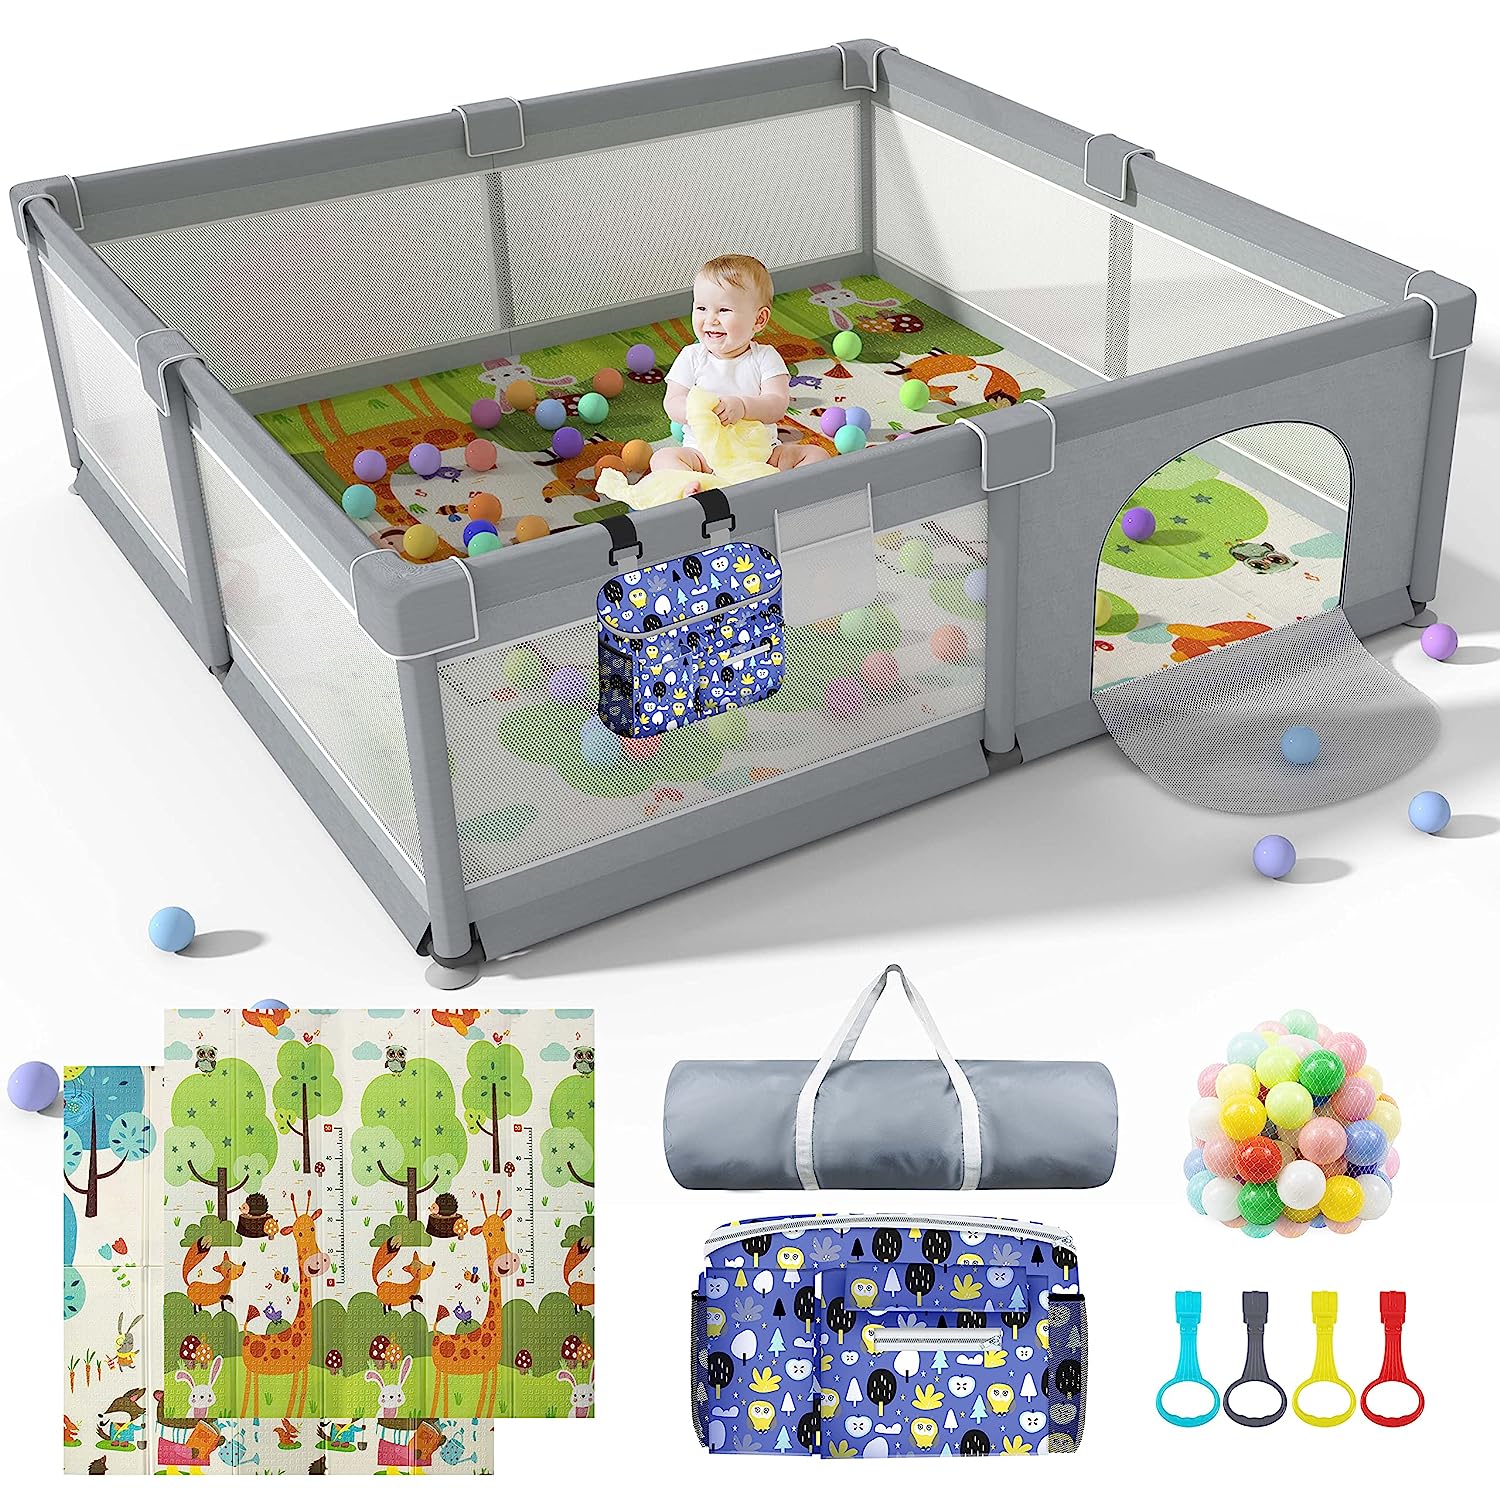 Corral de juegos para bebés y niños pequeños con alfombra, área de val -  VIRTUAL MUEBLES